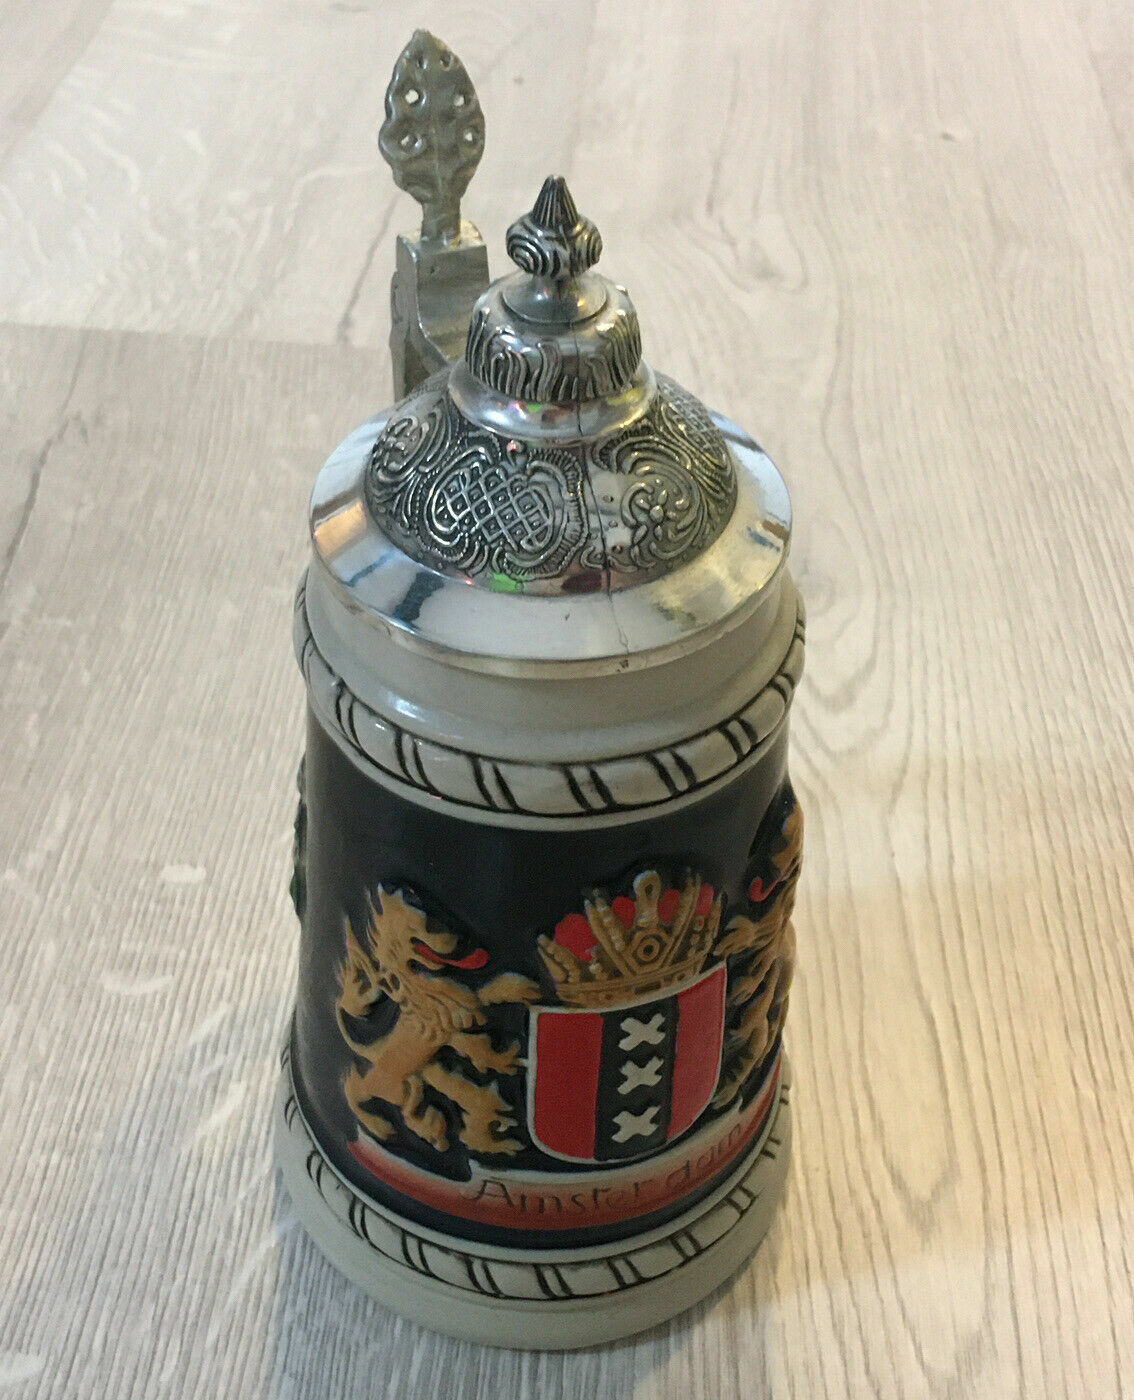 Vintage 9” Amsterdam Beer Stein Zoller & Born Handcrafted Souvenir .5 Liter